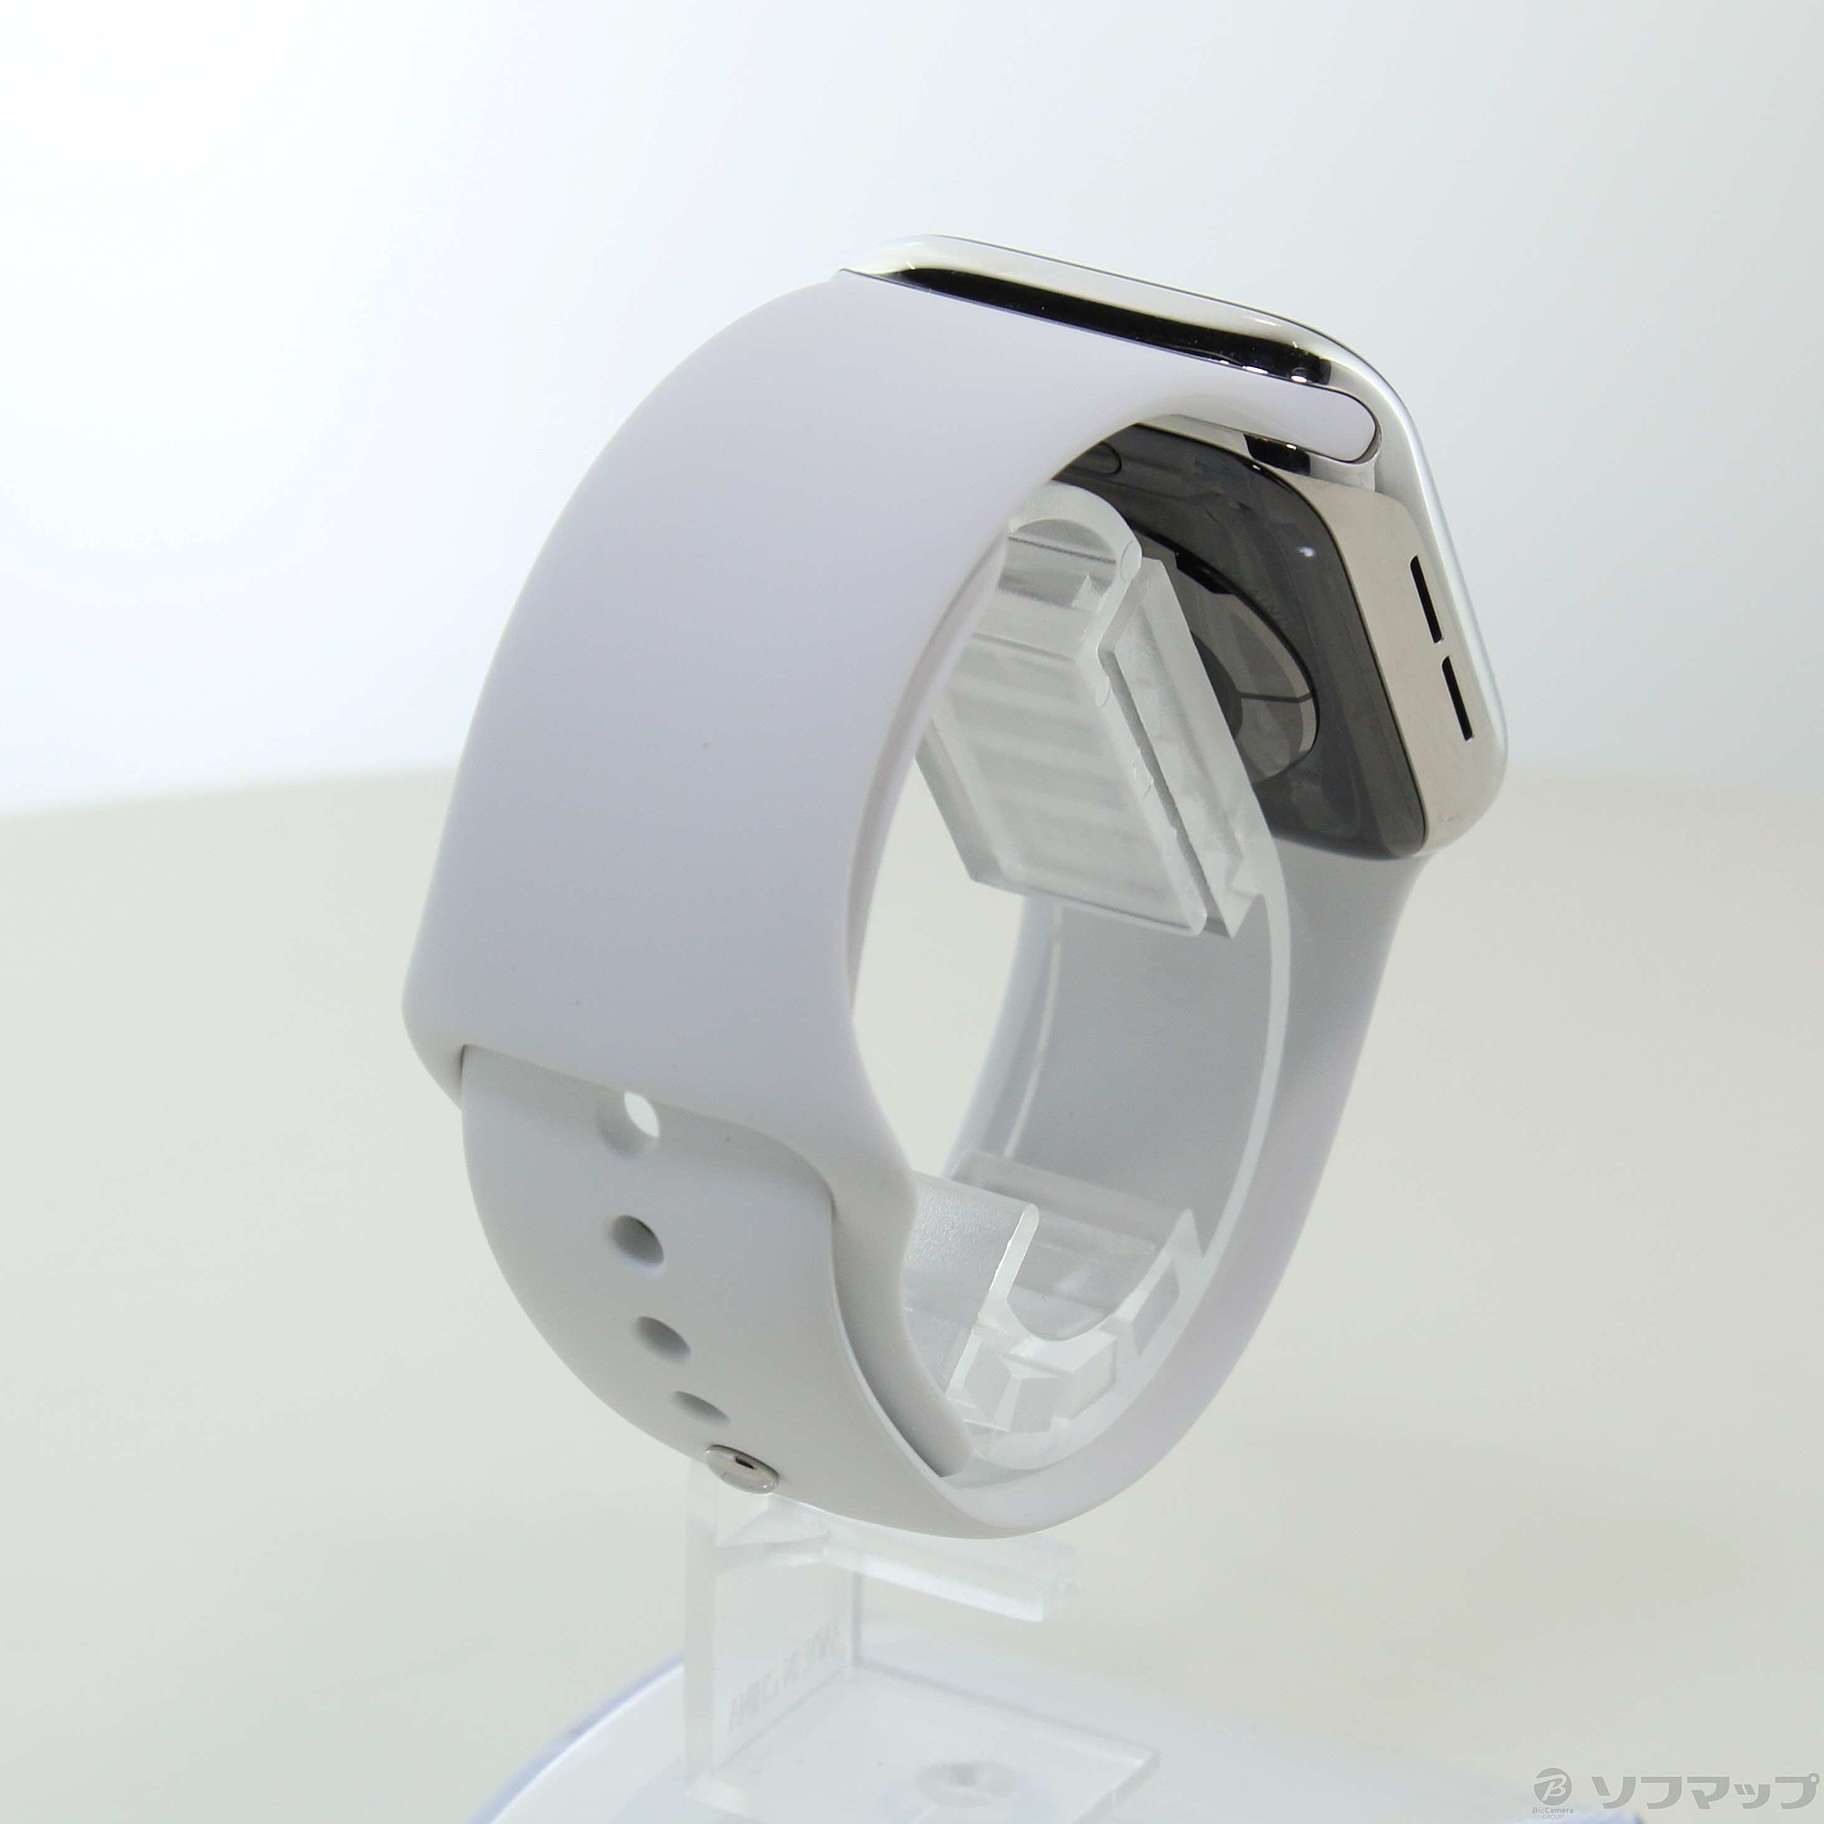 〔展示品〕 Apple Watch Series 6 GPS + Cellular 40mm シルバーステンレススチールケース ホワイトスポーツバンド